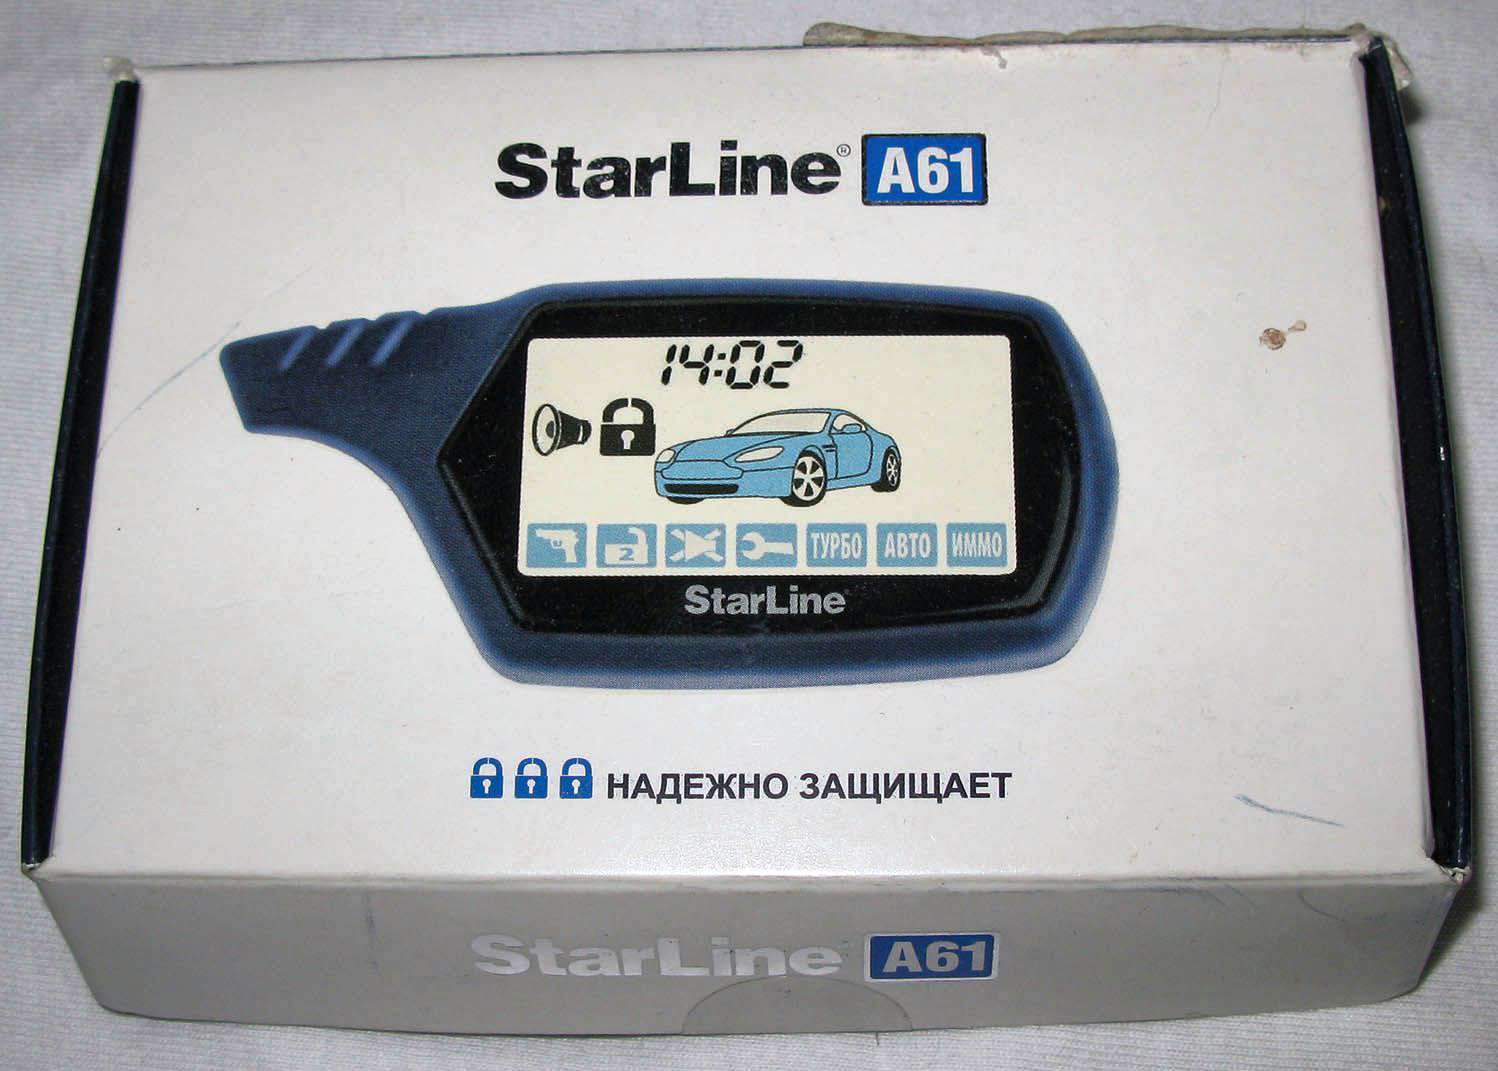 Старлайн модели с автозапуском. Сигнализация старлайн а61. Старлайн а61 с автозапуском. Сигнализация с автозапуском STARLINE а61. Брелок старлайн а61.